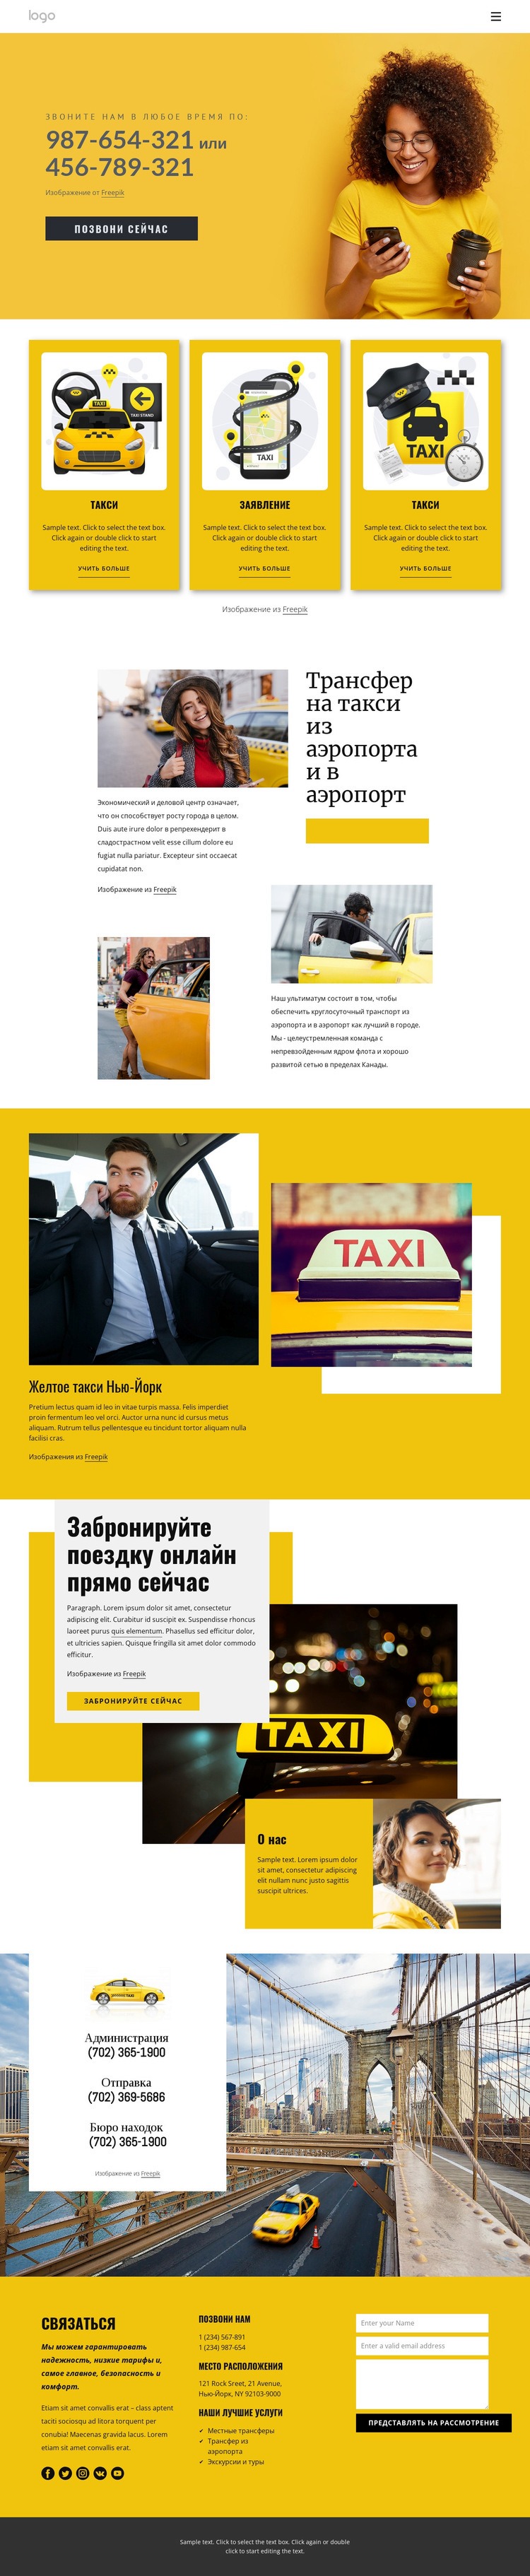 Качественное такси Мокап веб-сайта